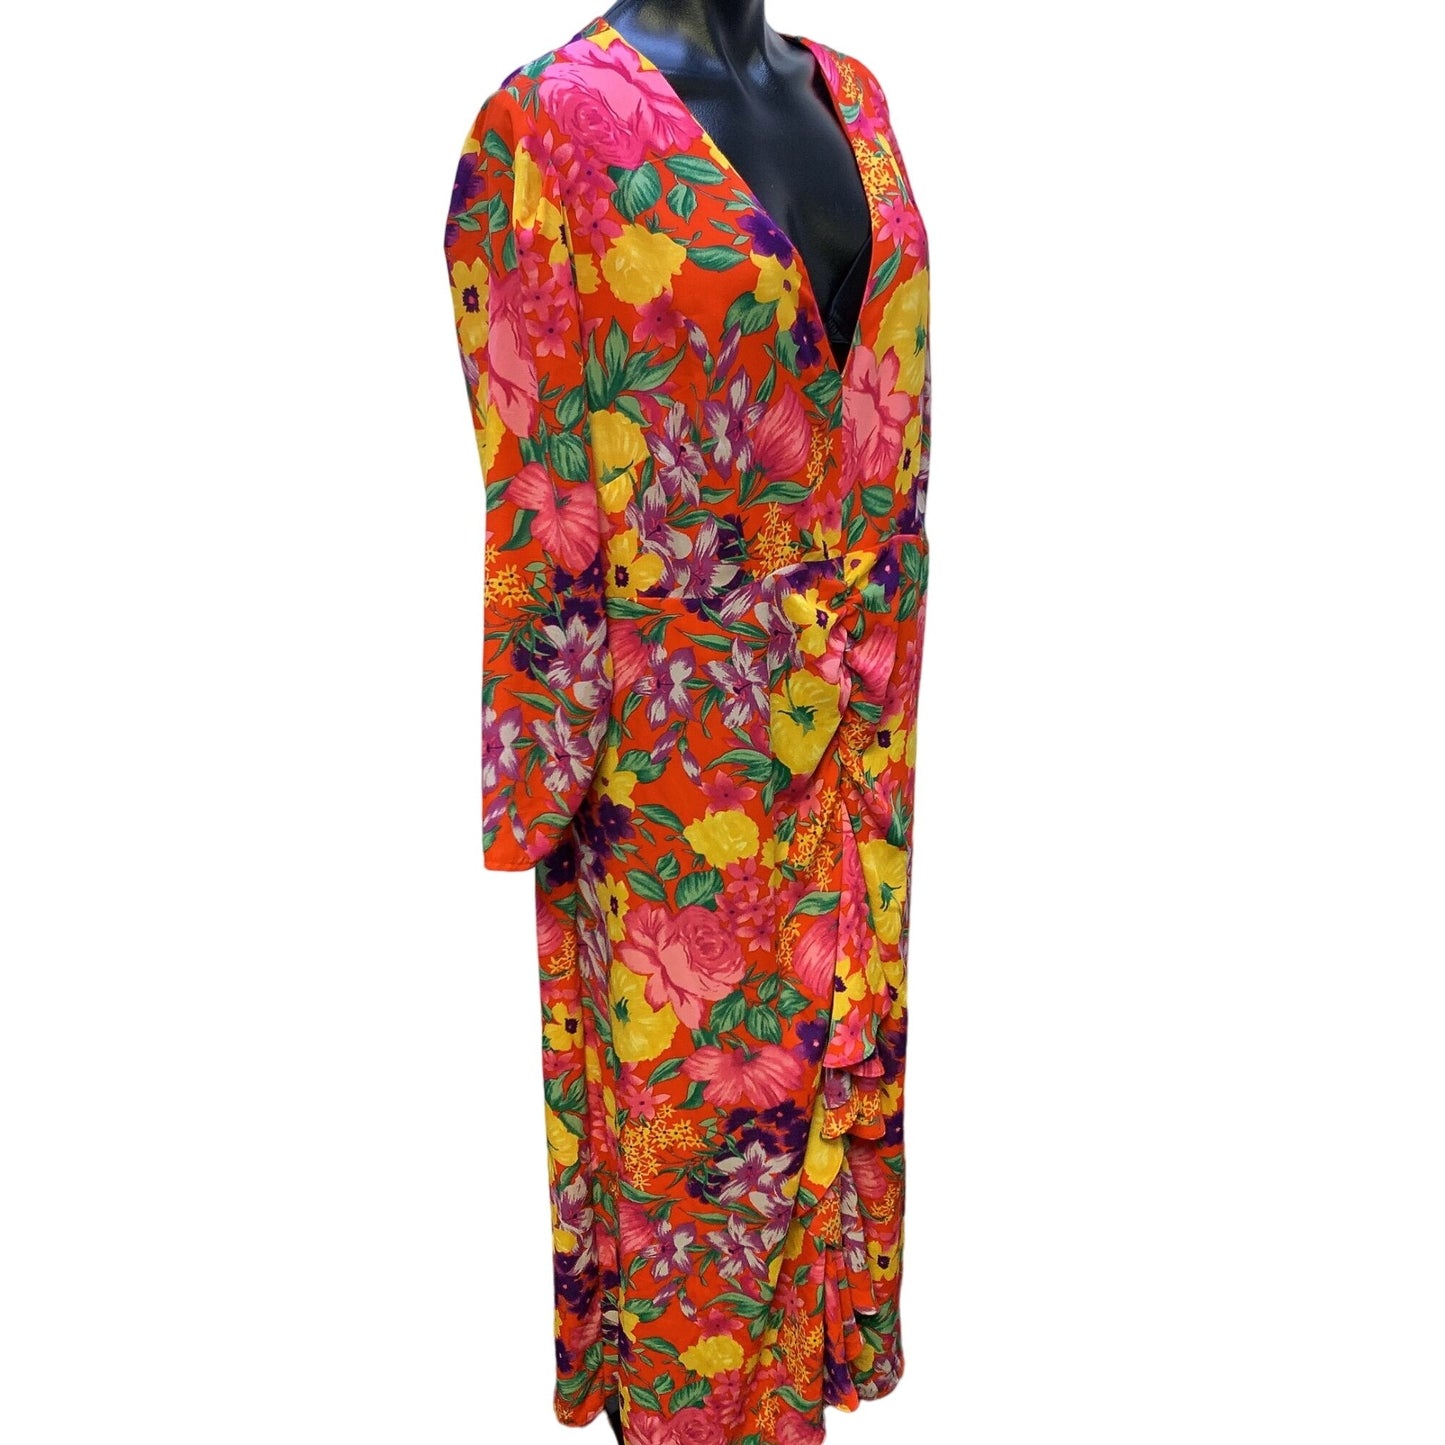 *Rixo Red & Yellow Floral Print Dress Size 16W/18W